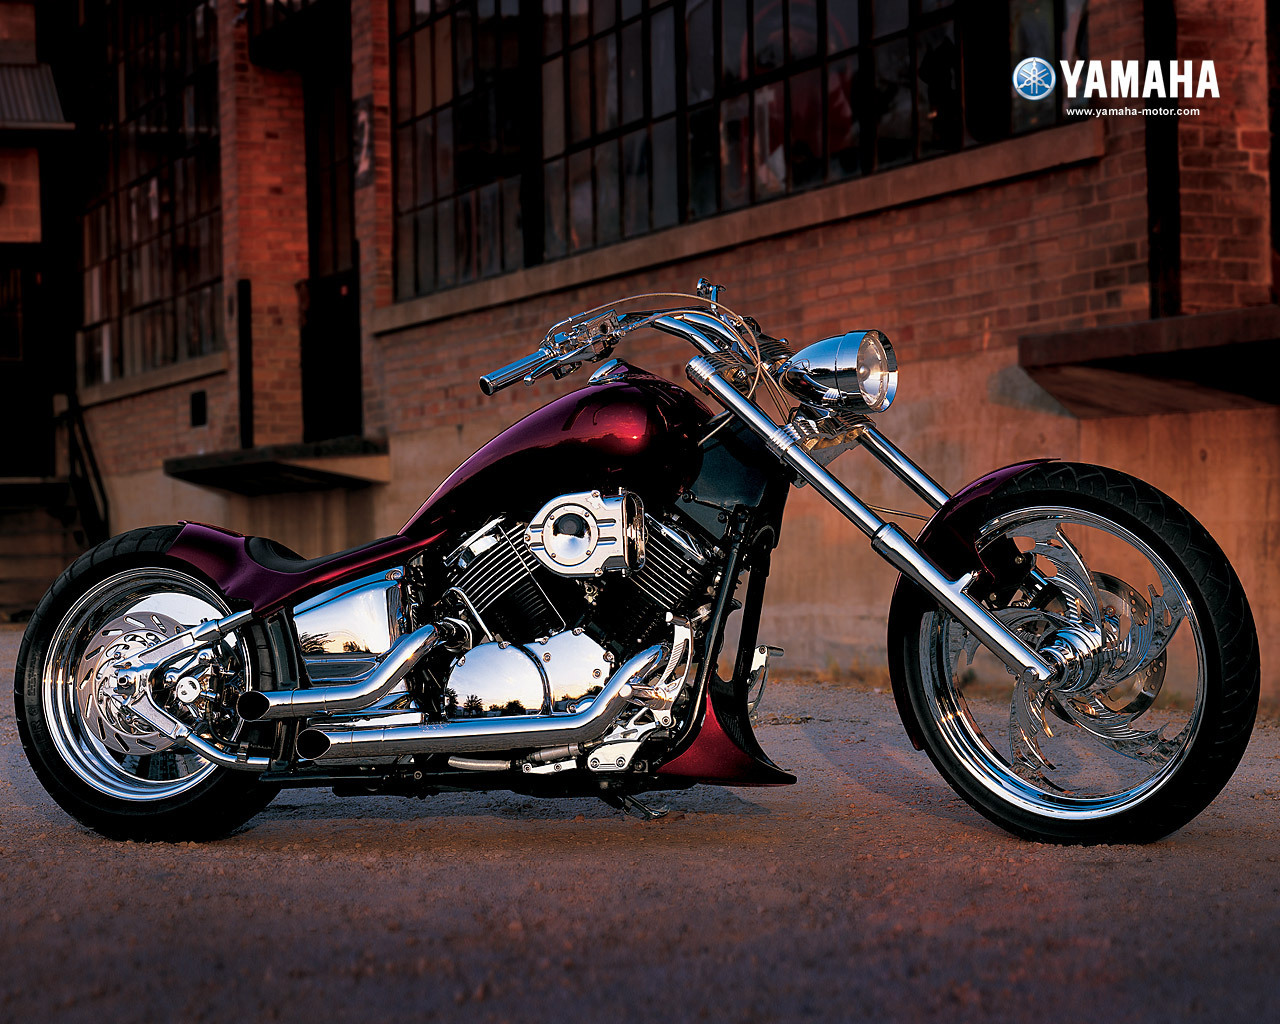 Motorcycles Image Yamaha Chopper Wallpaper Photos